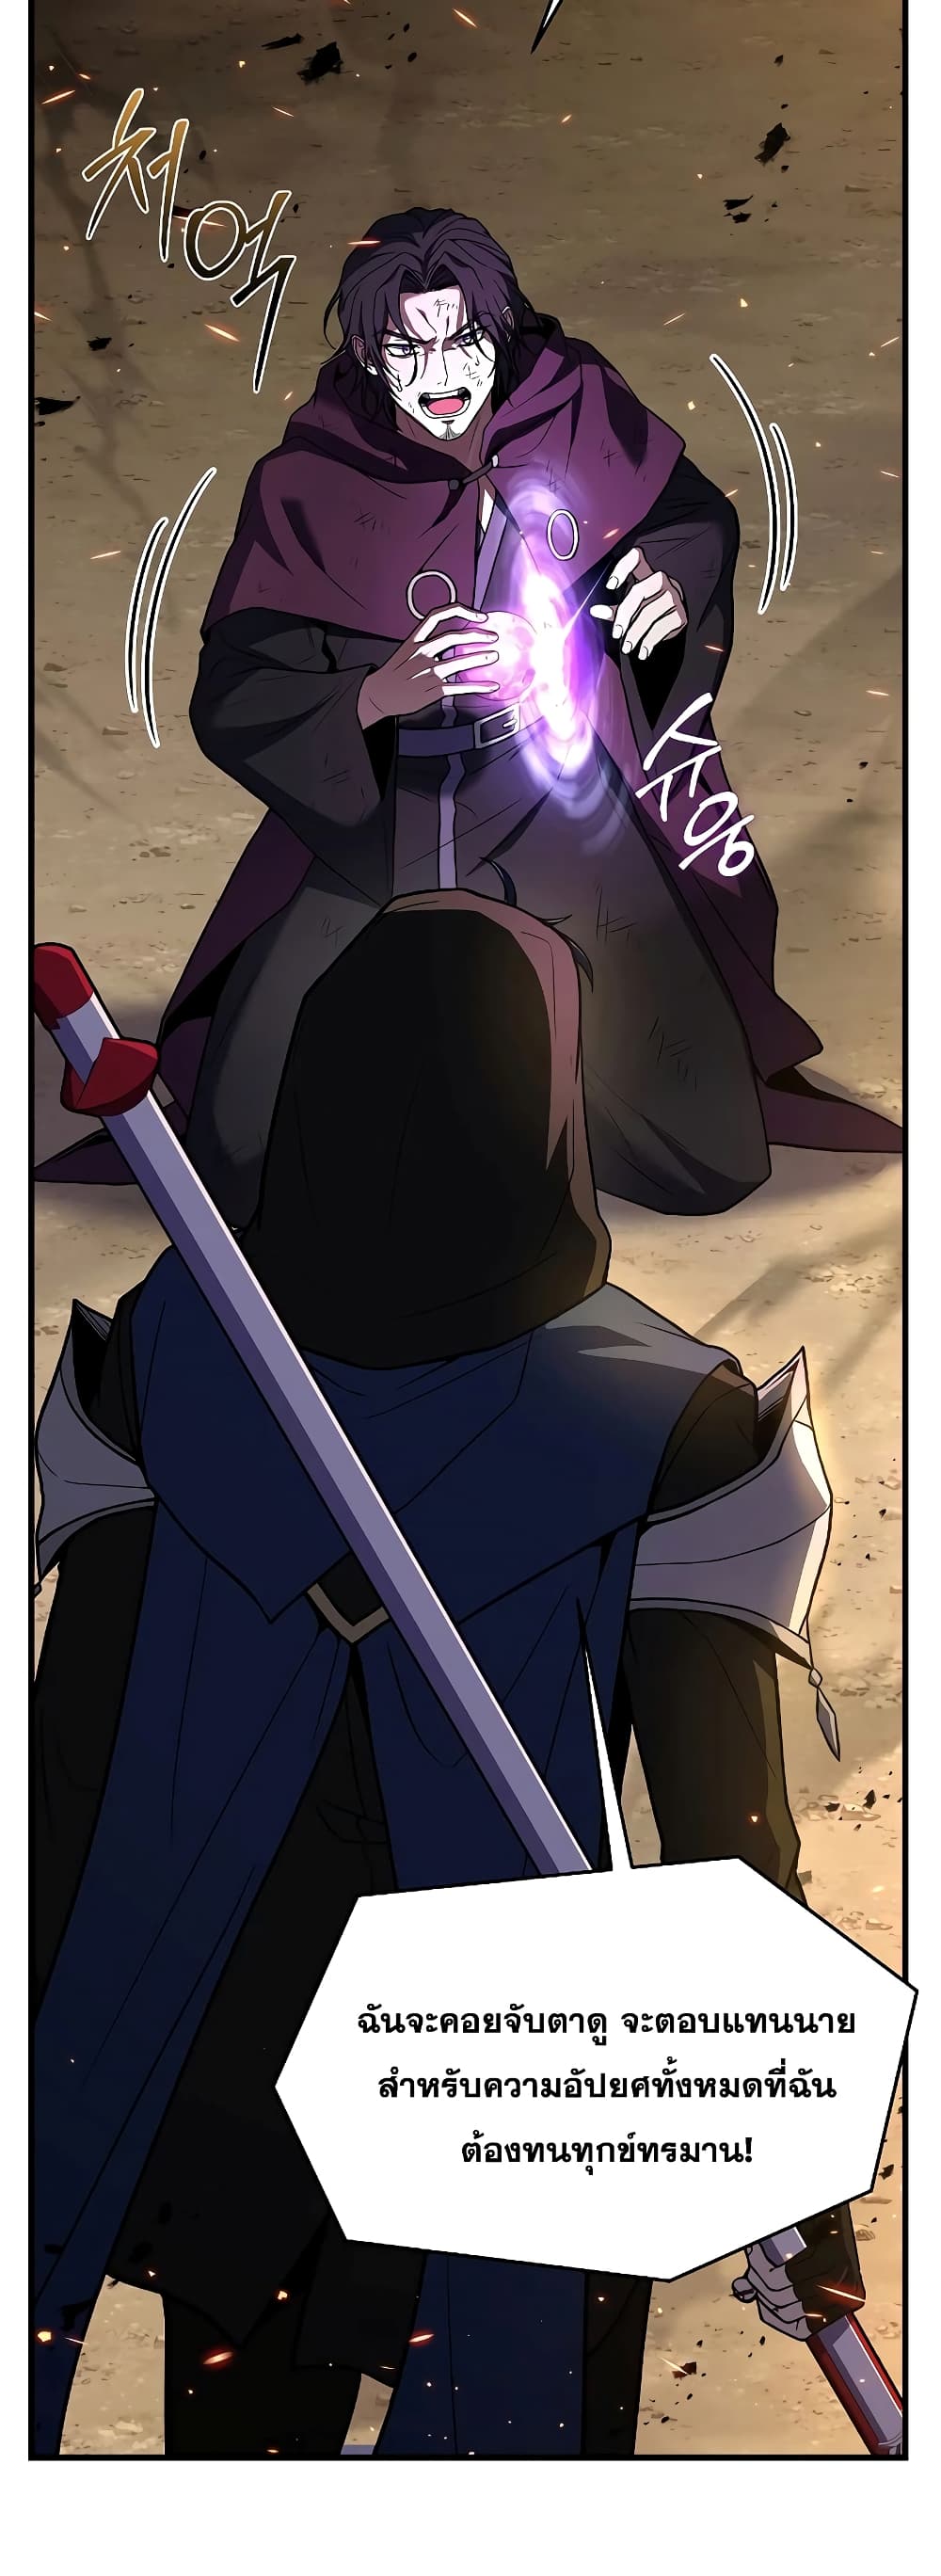 Return of the Legendary Spear Knight 114-114